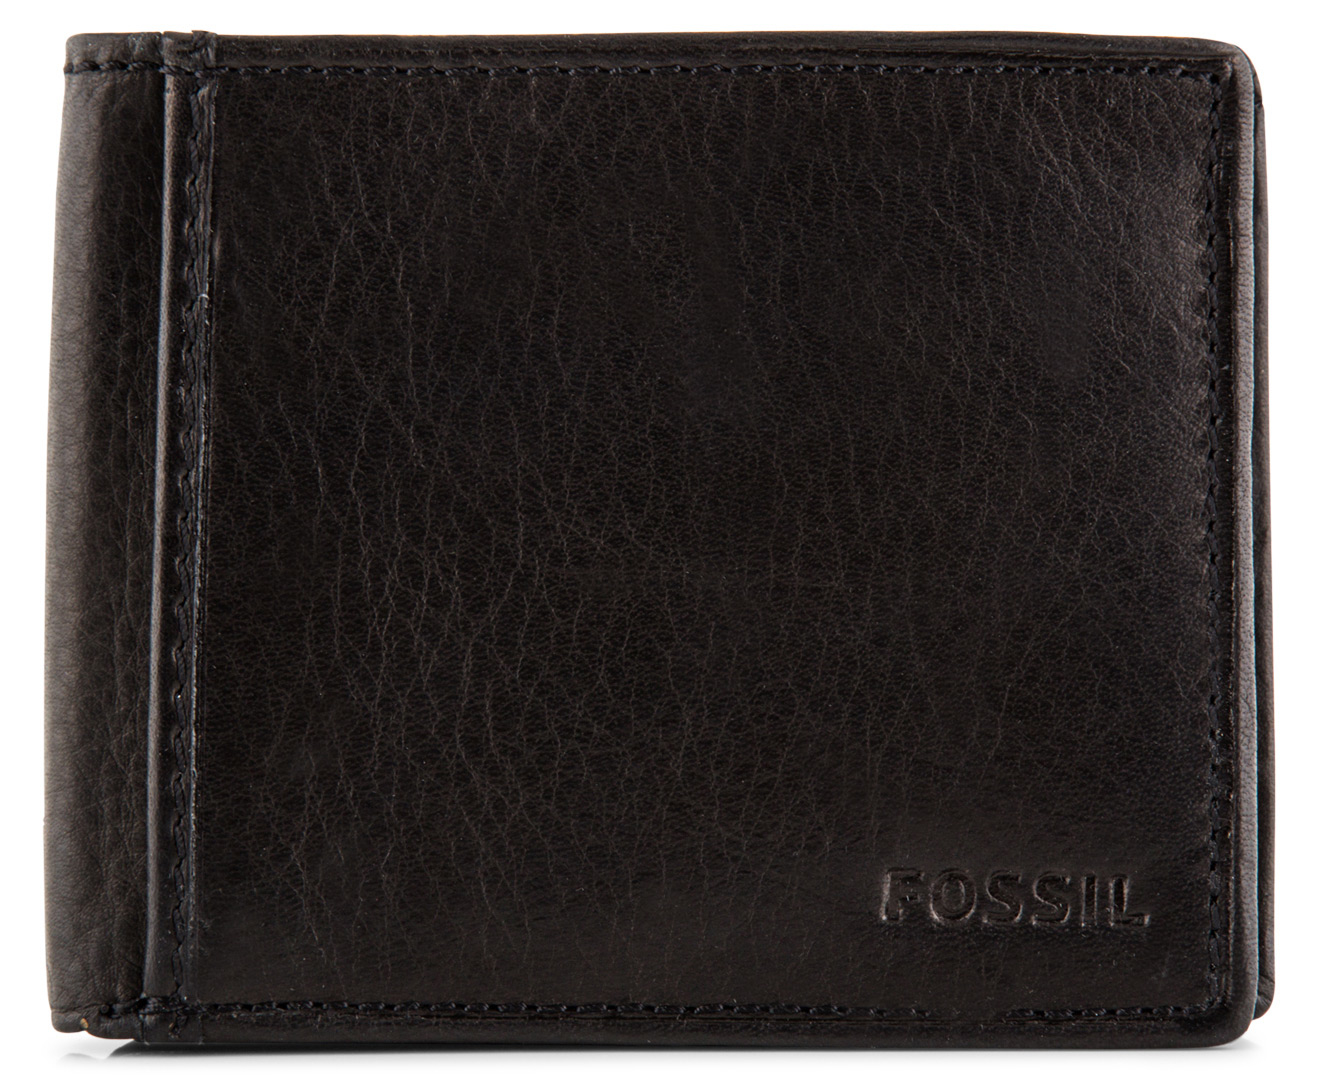 Fossil Men's Leather Ingram Traveler Trifold Wallet - Black